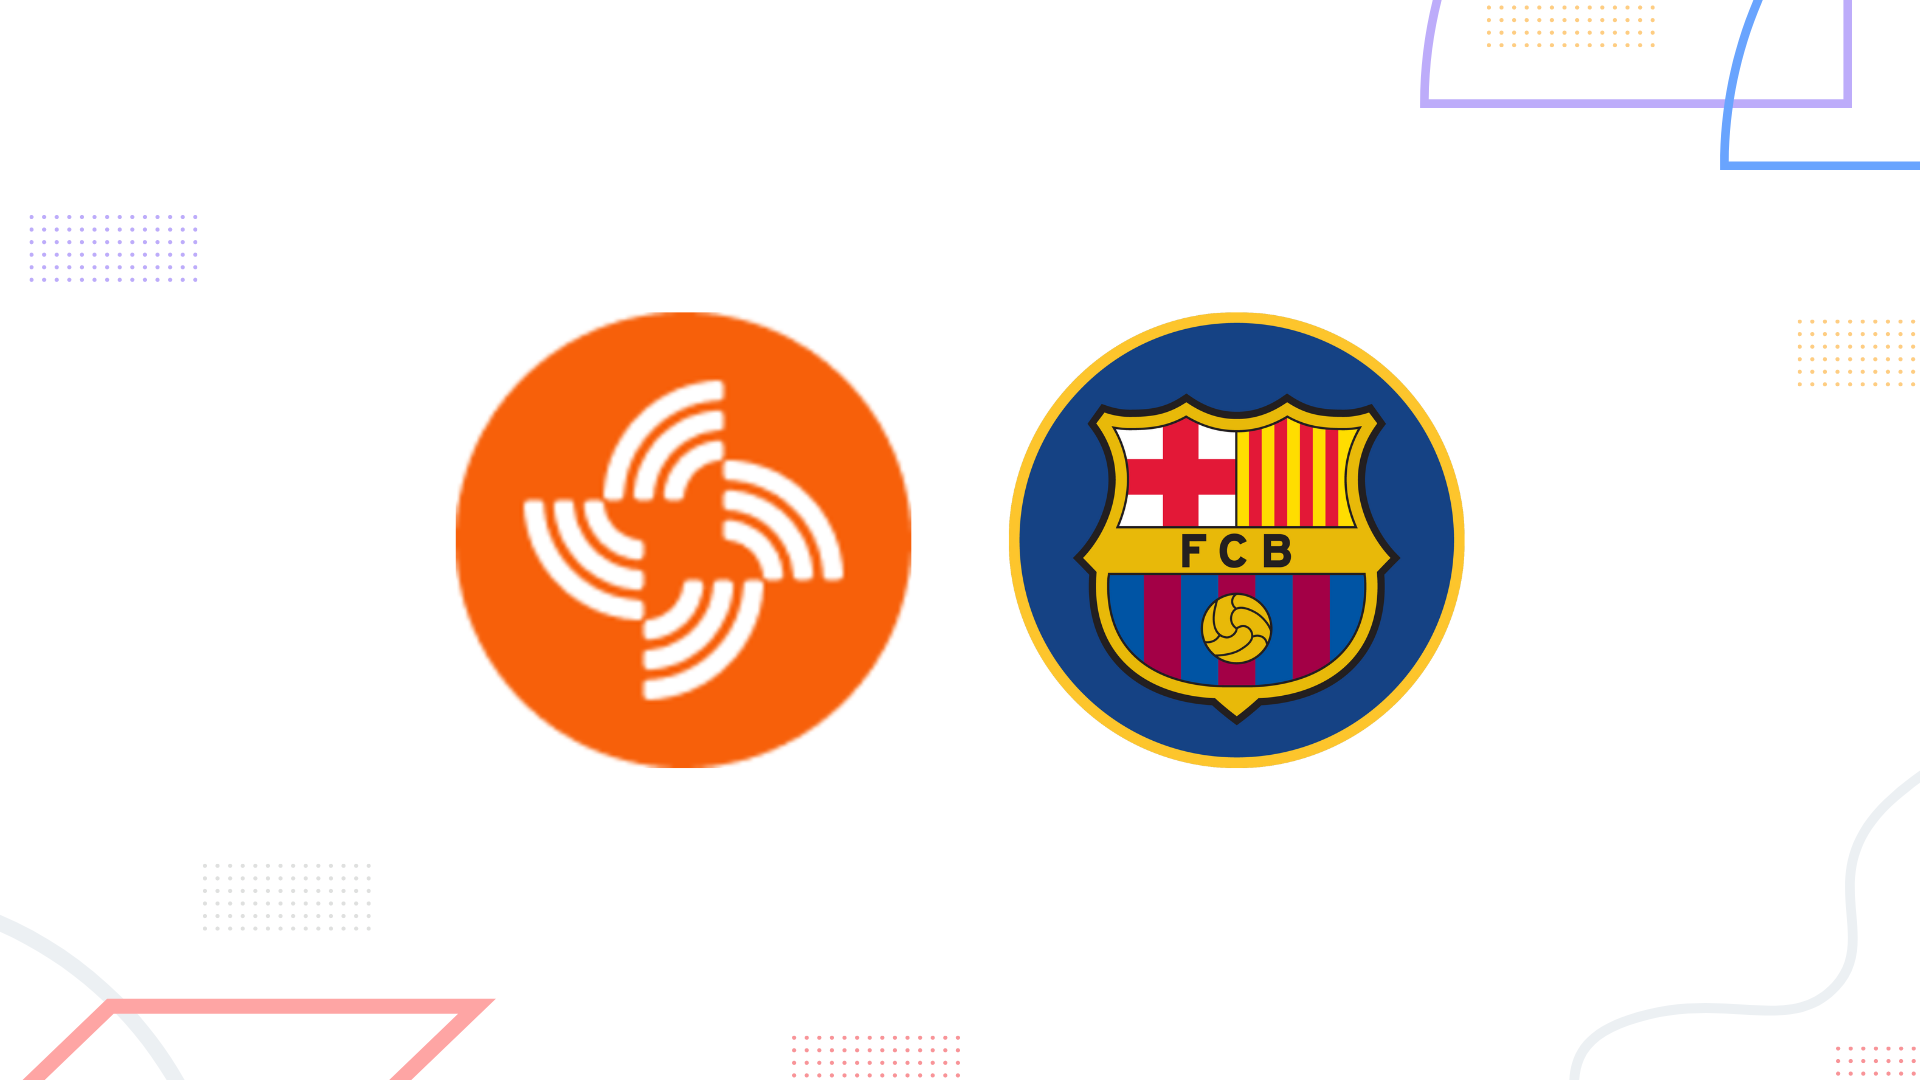 Streamr (DATA) dan FC Barcelona Fan Token (BAR)